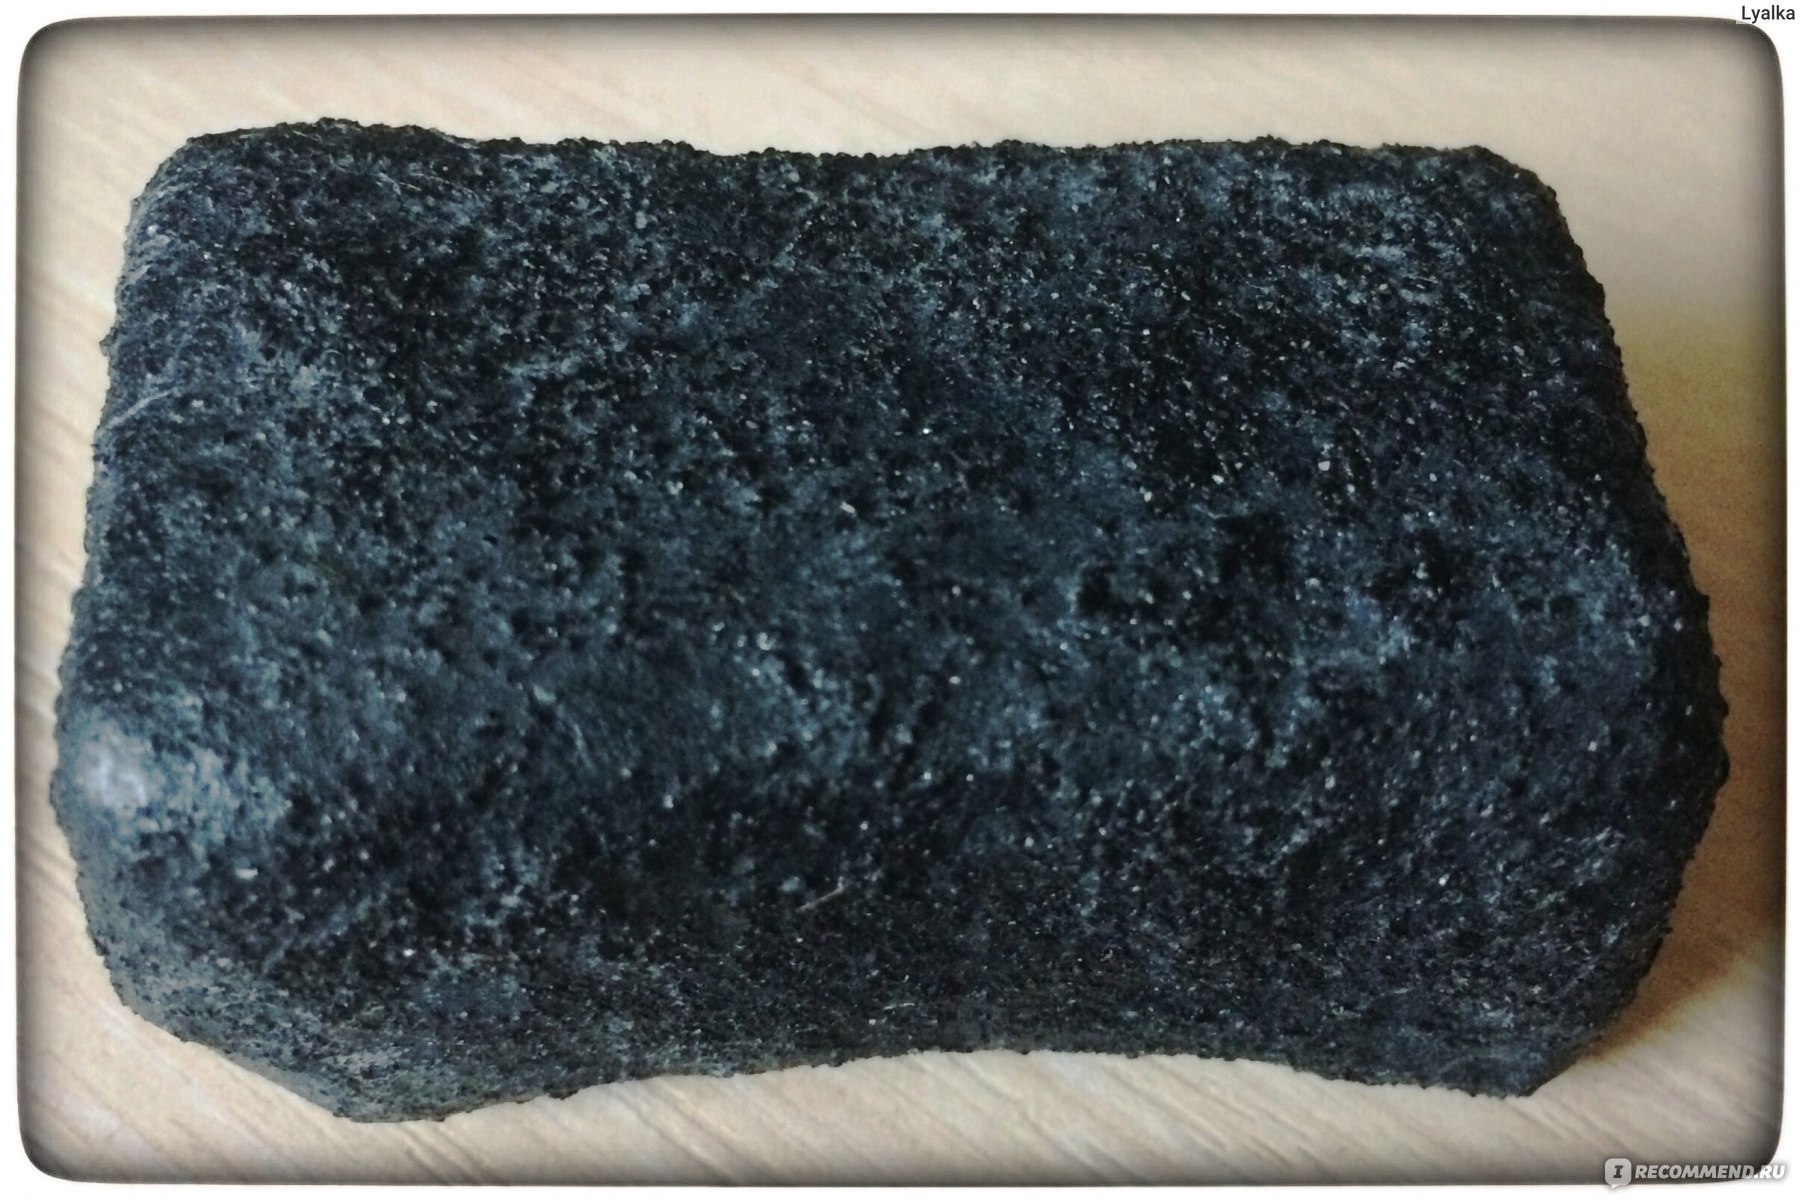 Мыло спустя 2 месяца использования: видны шероховатые вкрапления угля